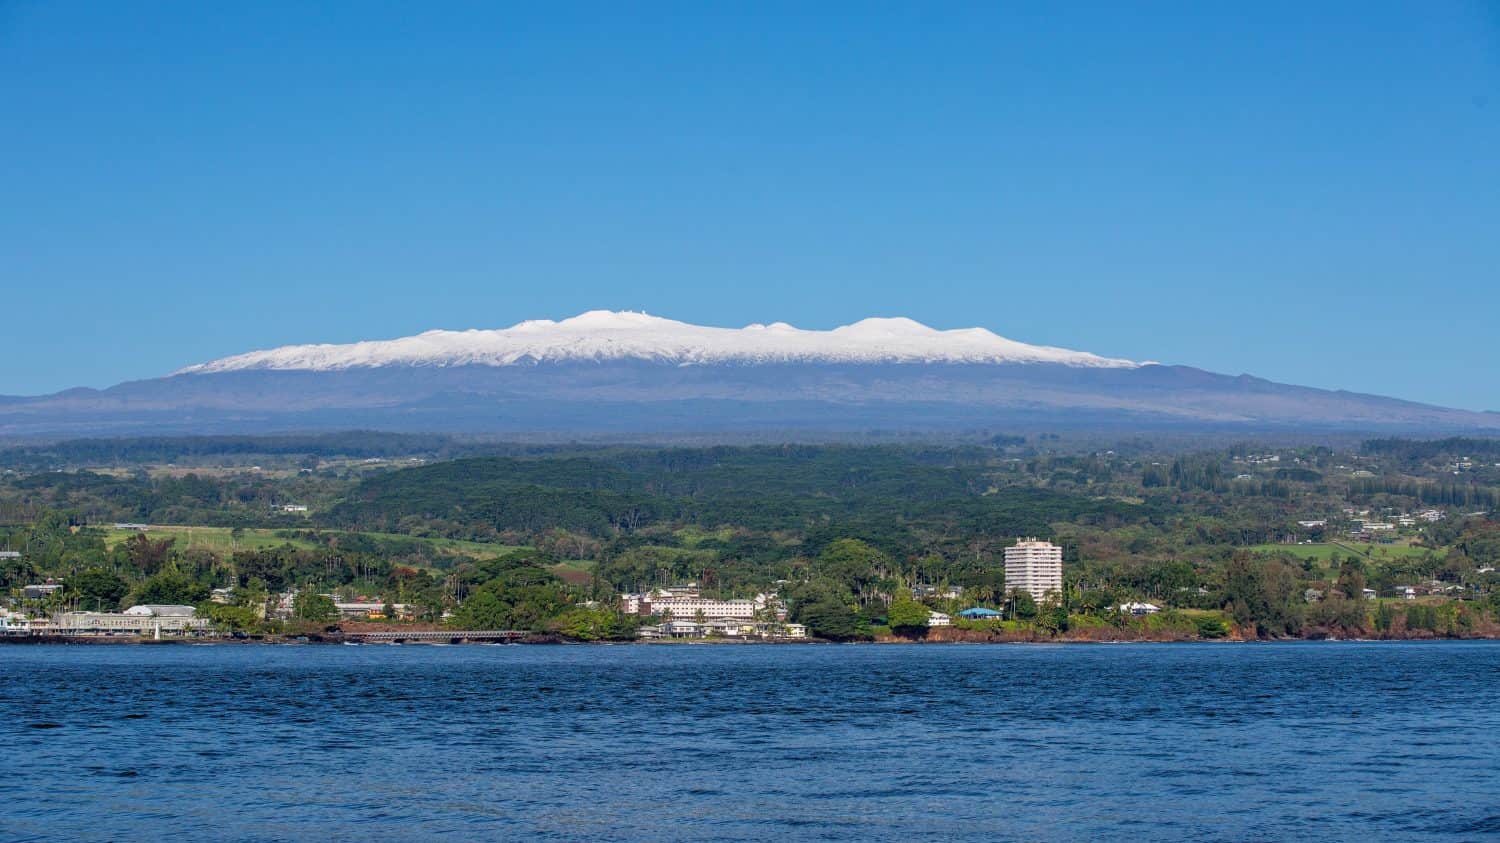 Immagine di Hilo, Hawaii, in una giornata di sole con il Mauna Kea innevato sullo sfondo 